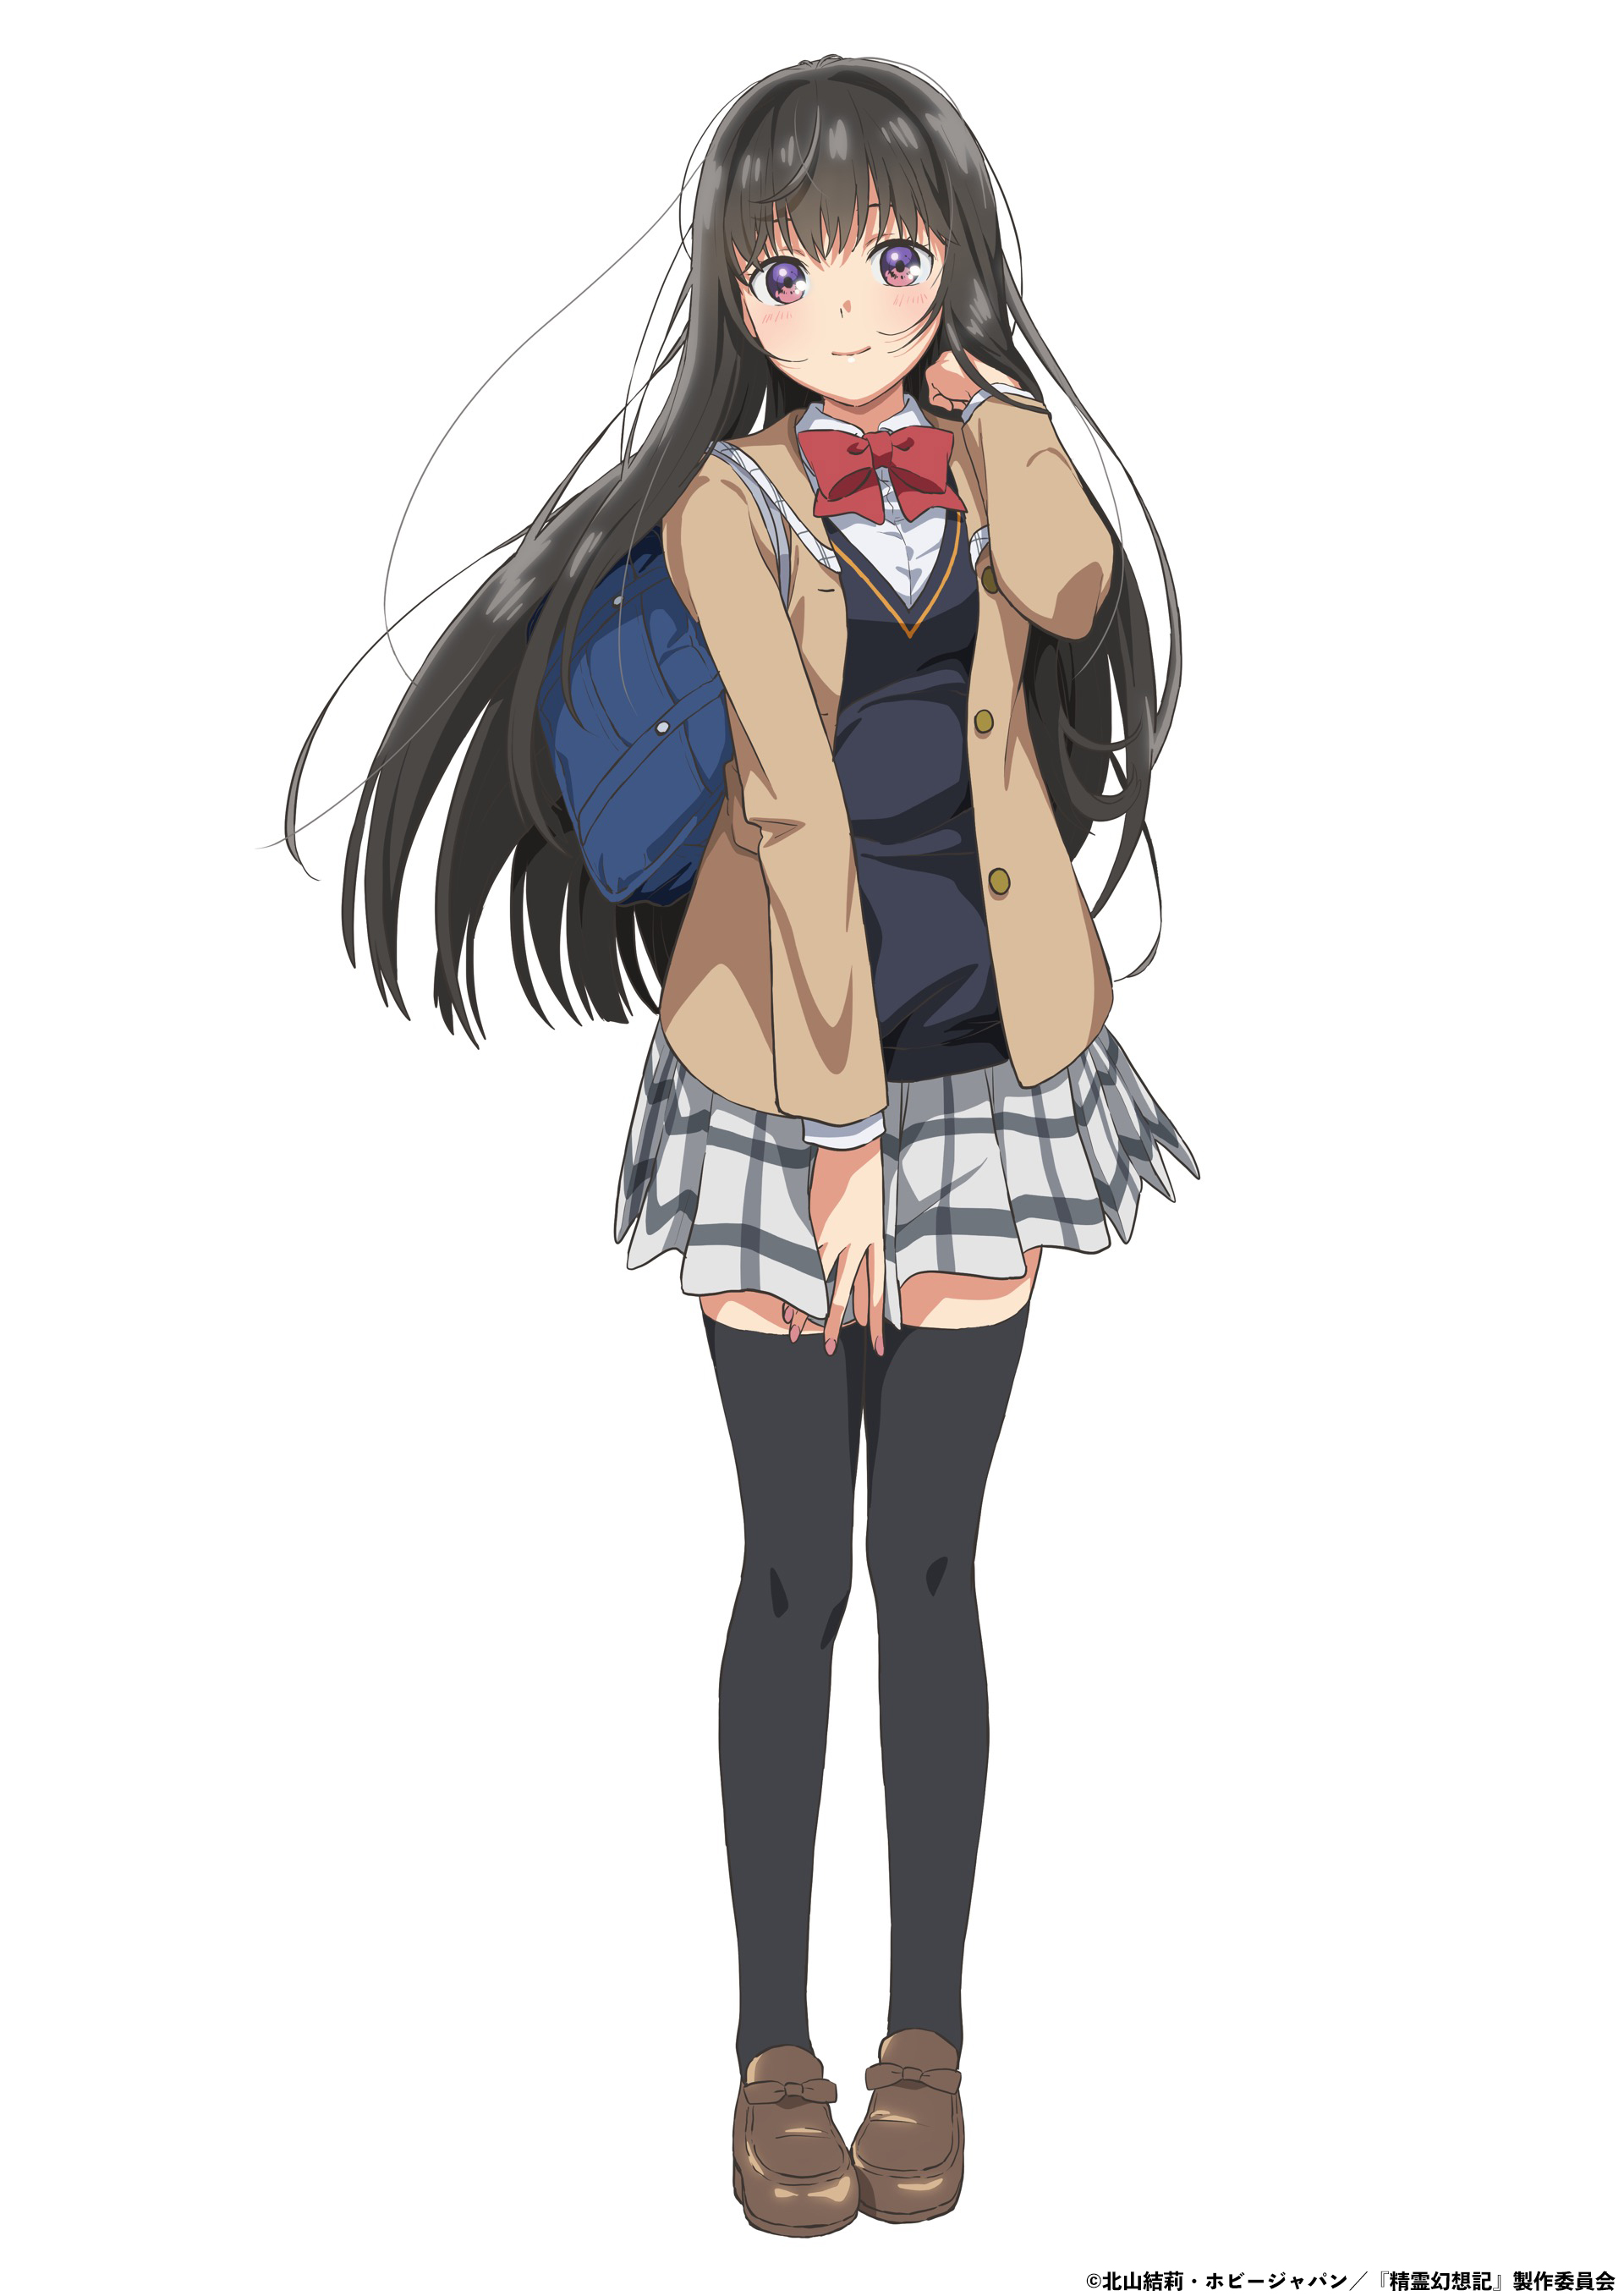 Eine Charaktereinstellung von Sayaka Harada aus dem kommenden TV-Anime Seirei Gensouki: Spirit Chronicles.  Miharu erscheint als Highschool-Mädchen mit hüftlangen schwarzen Haaren und violetten Augen.  Sie trägt eine Schuluniform mit einer roten Schleife, einem braunen Blazer, einer schwarzen Weste, einem weiß-grau karierten Rock und oberschenkelhohen schwarzen Strümpfen.  Sie trägt einen blauen Rucksack.